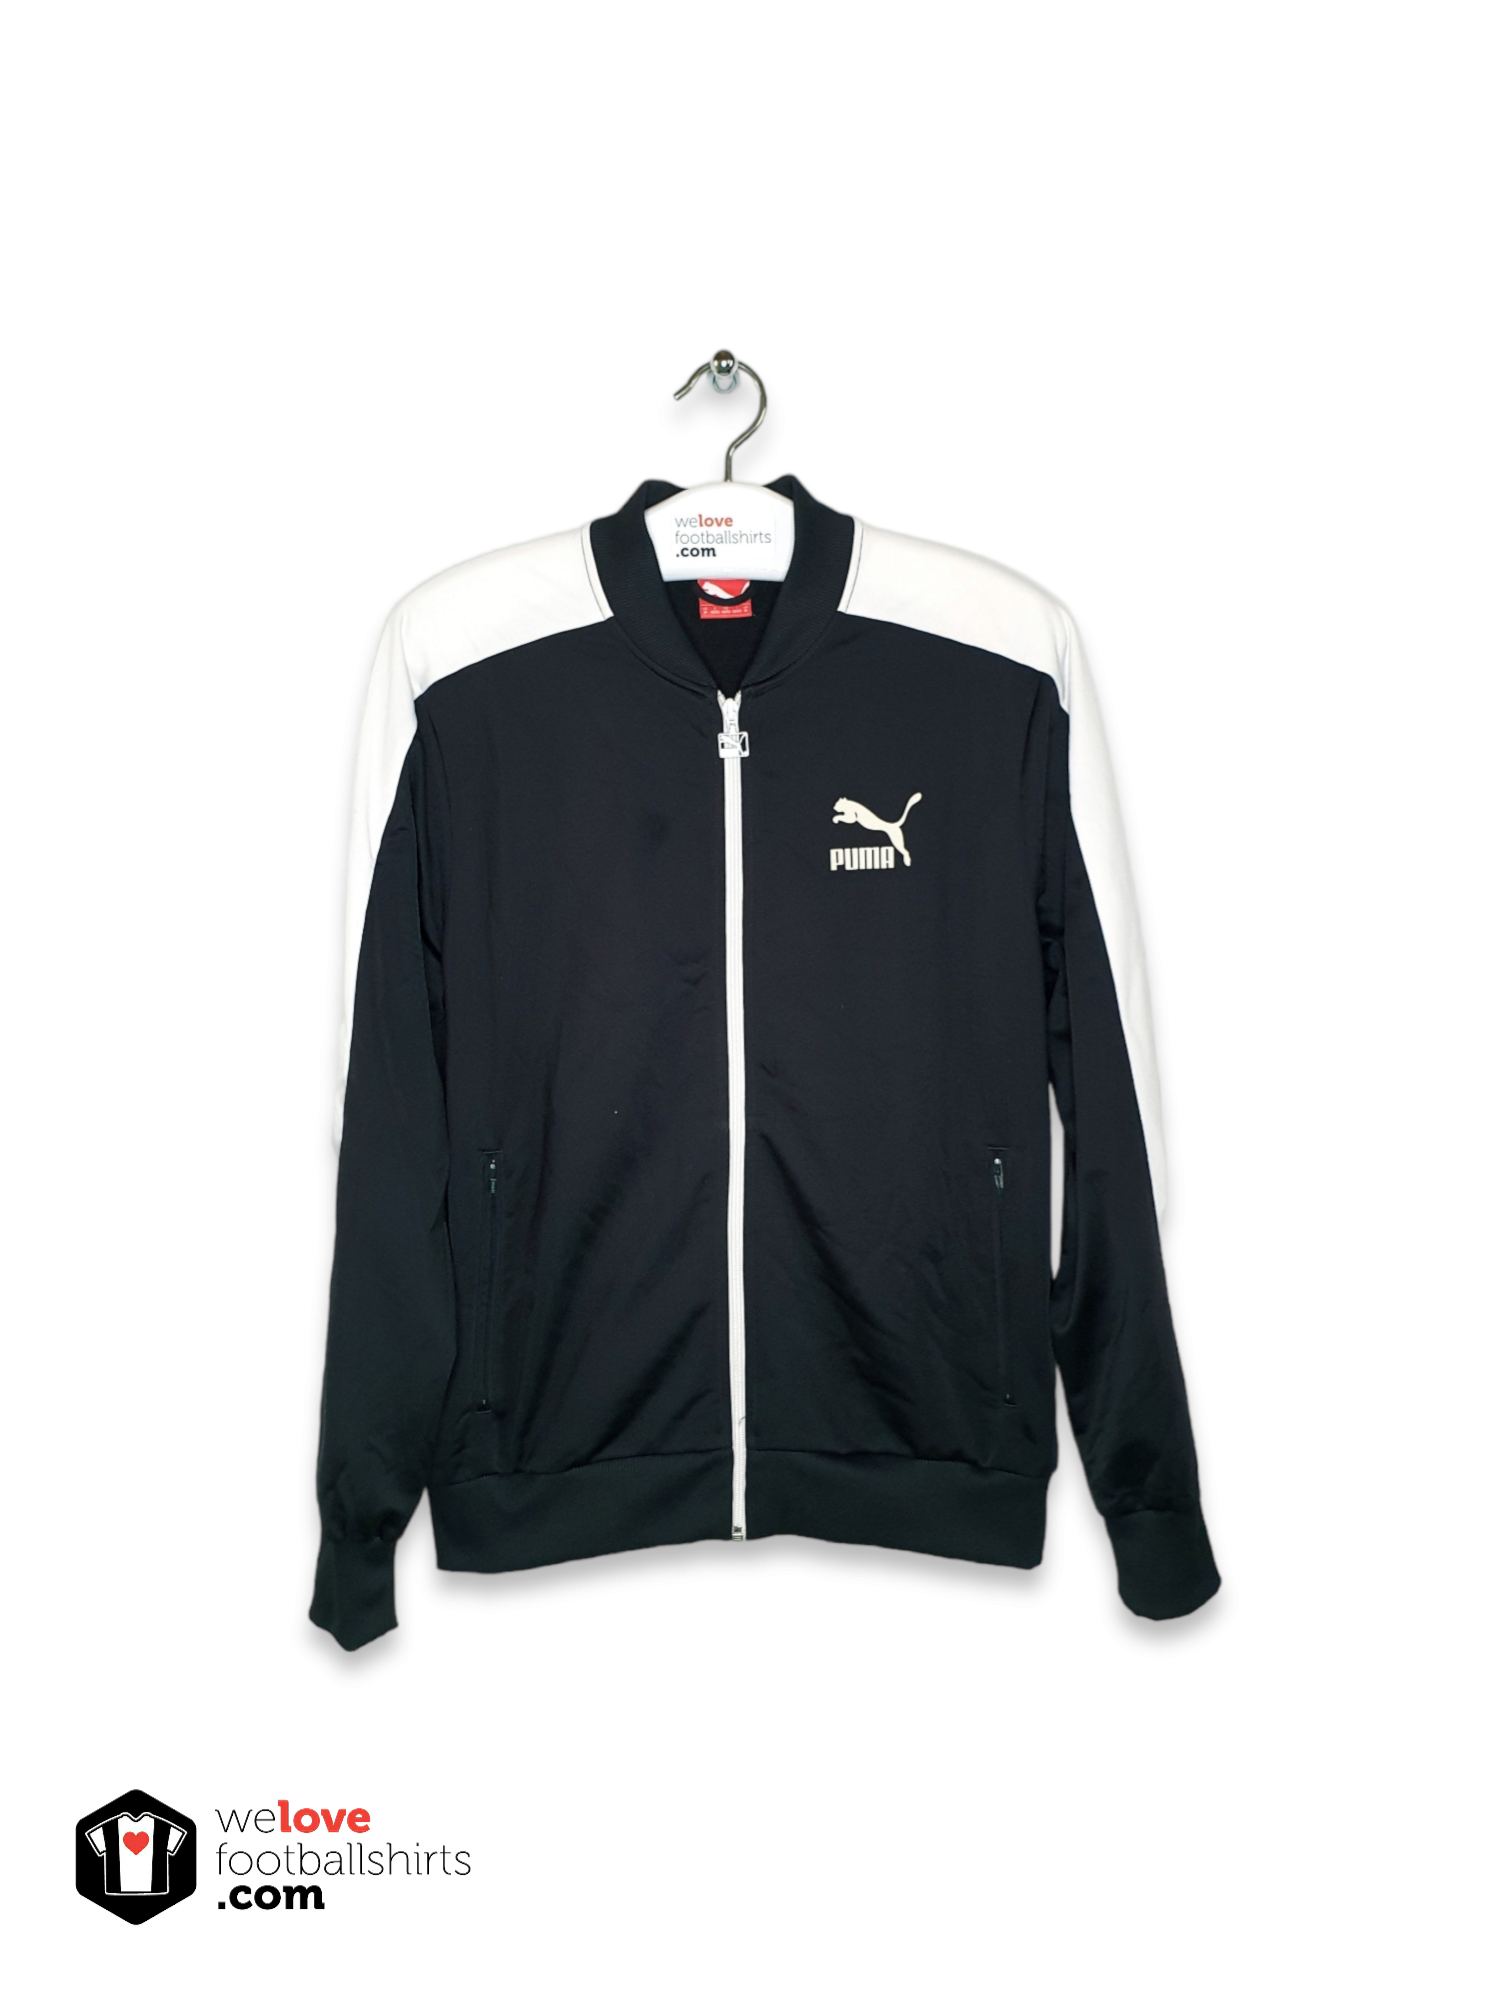 Puma vintage track jacket - Welovefootballshirts.com